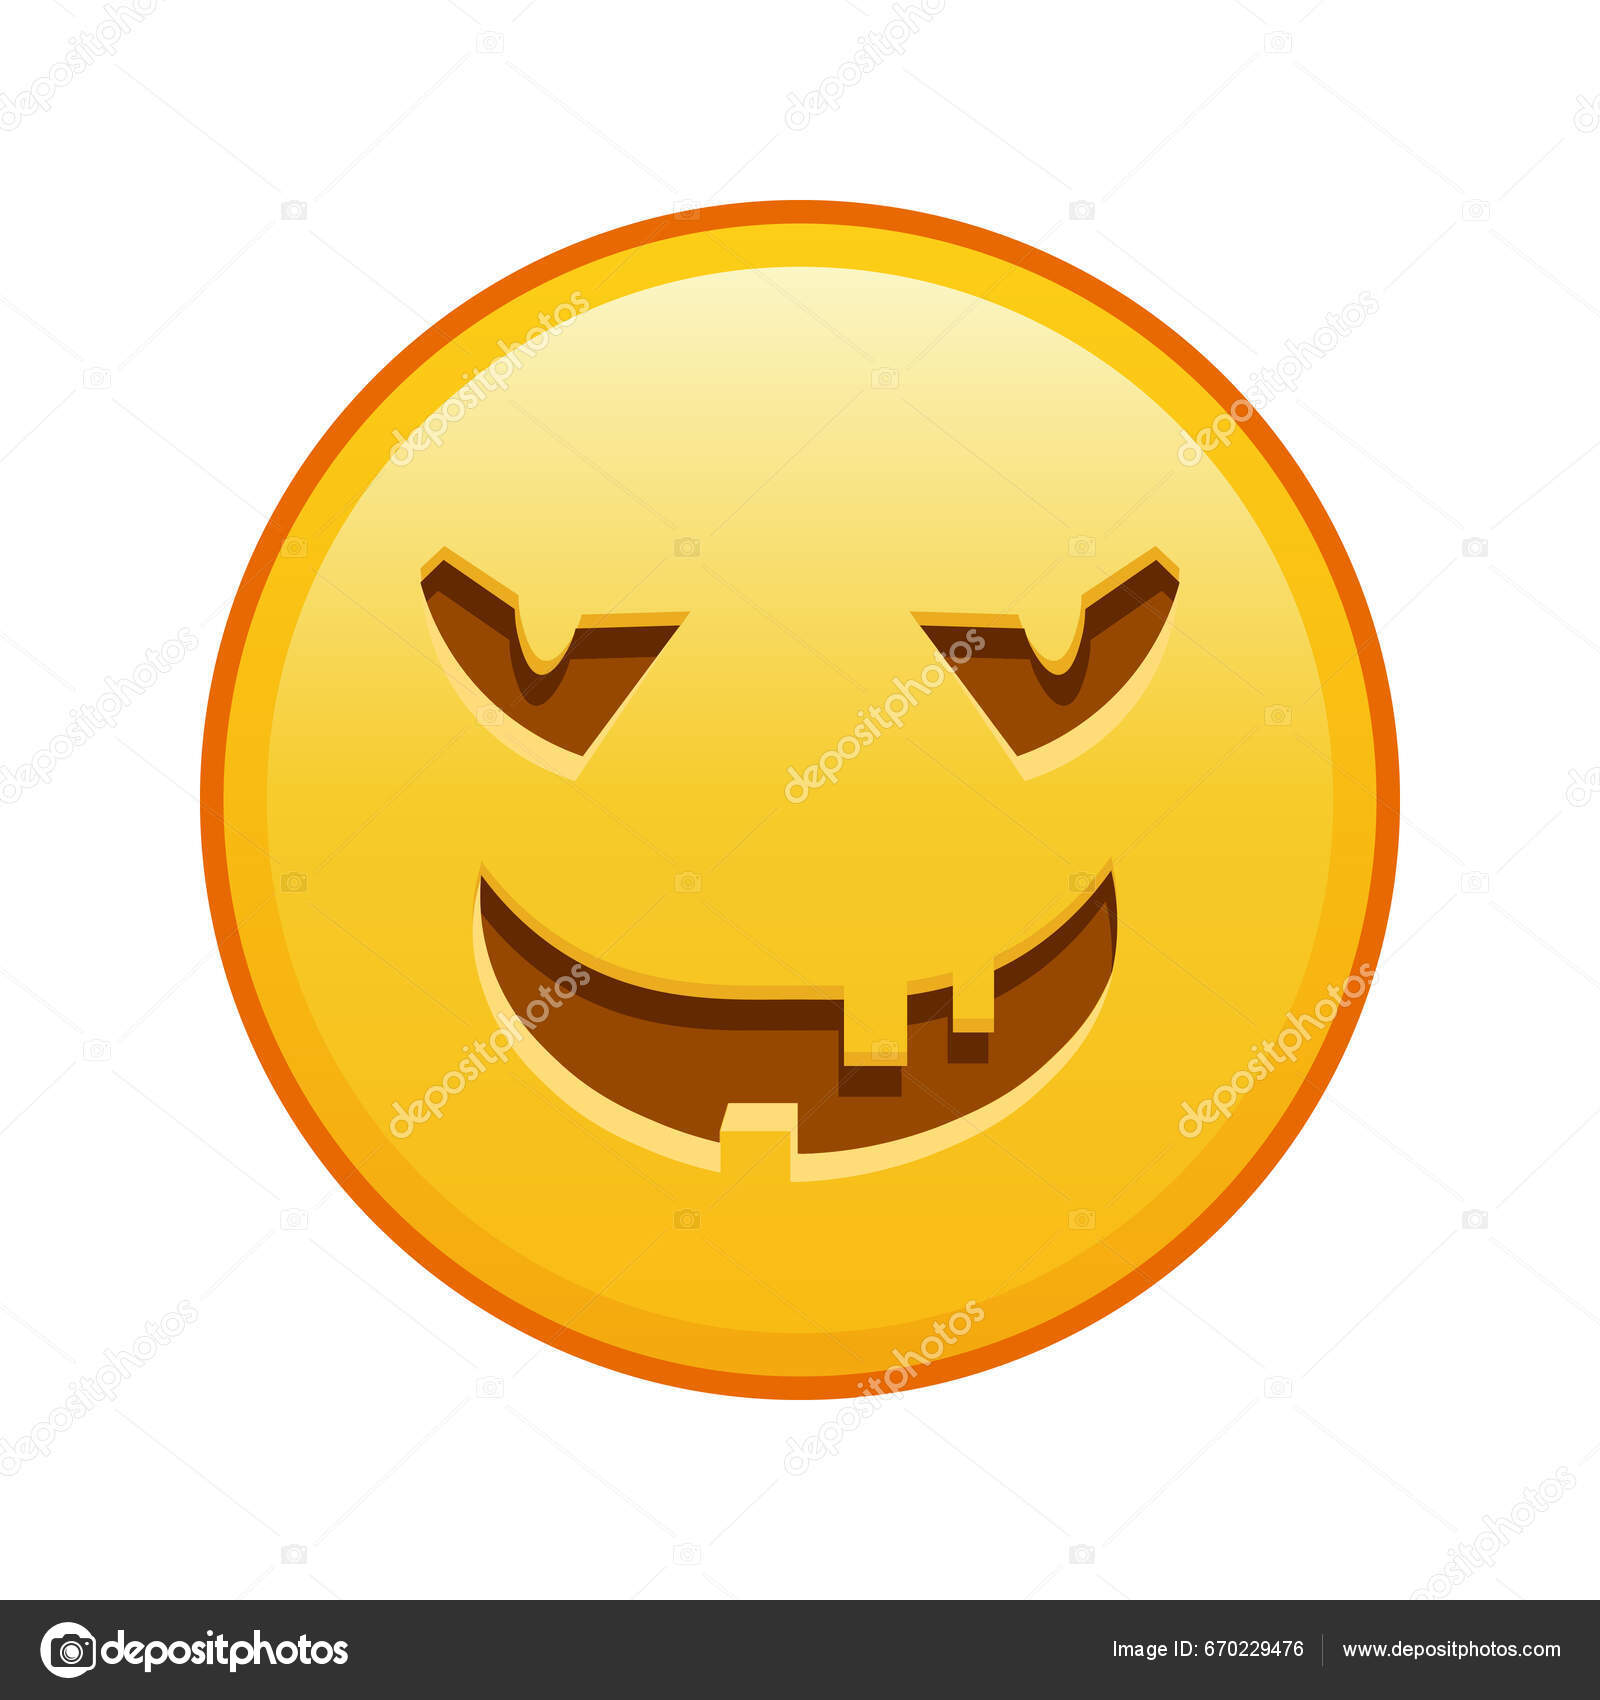 Cara Assustadora Dia Das Bruxas Grande Tamanho Sorriso Emoji Amarelo  vetor(es) de stock de ©Eugene_B-sov 670229476